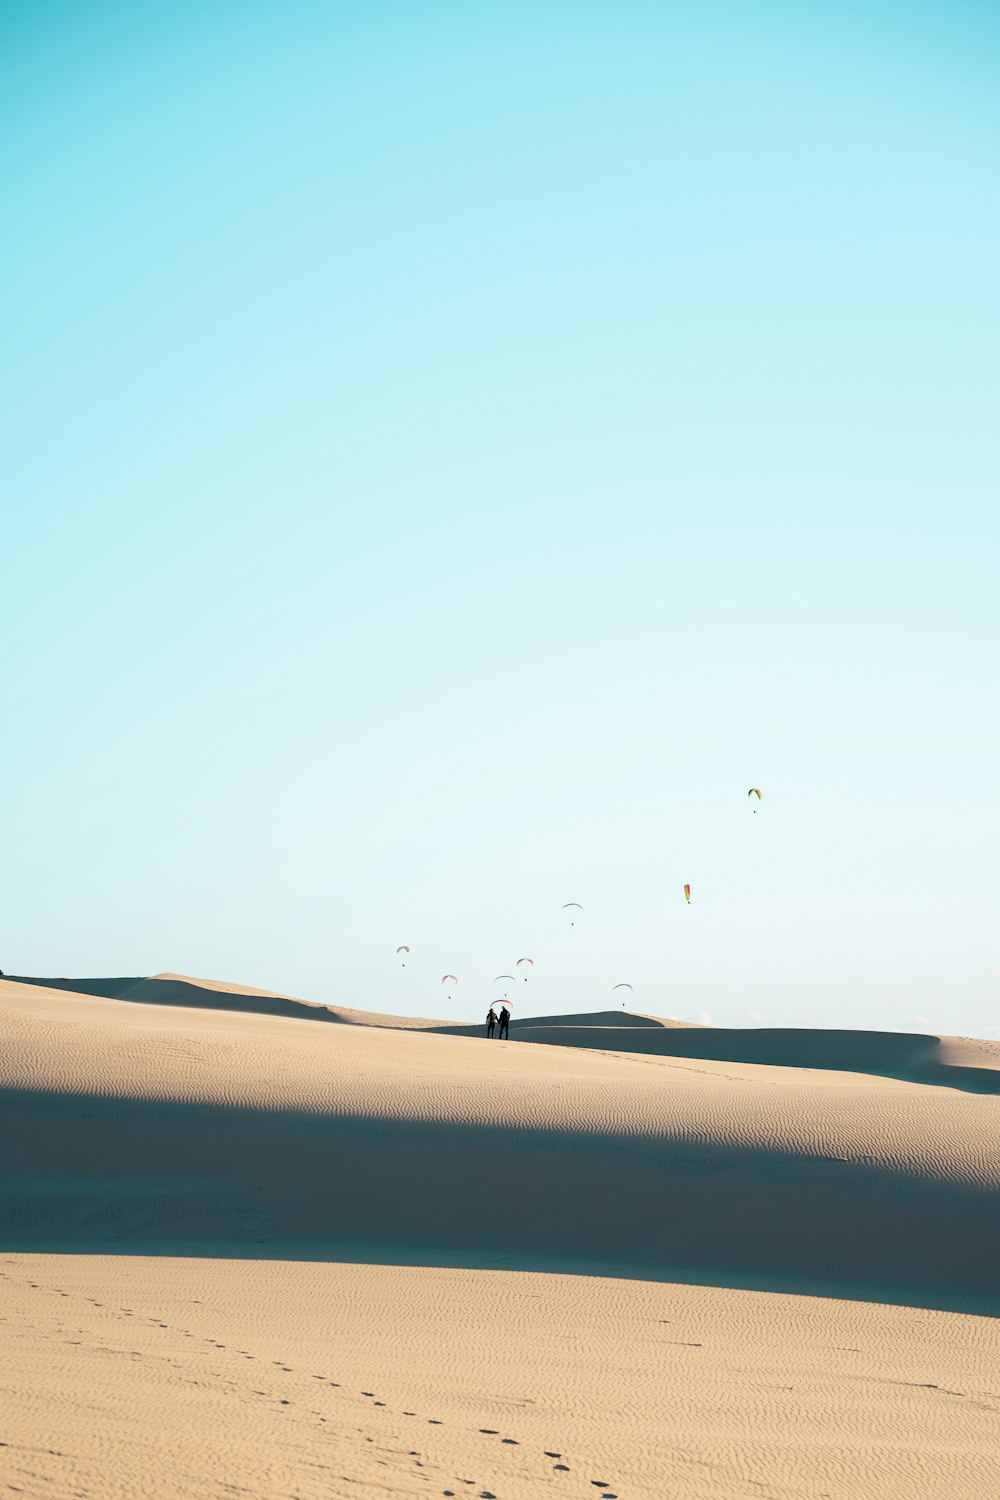 昼間の青空の下で砂漠を歩く人々の写真 Unsplashで見つけるフランスの無料写真